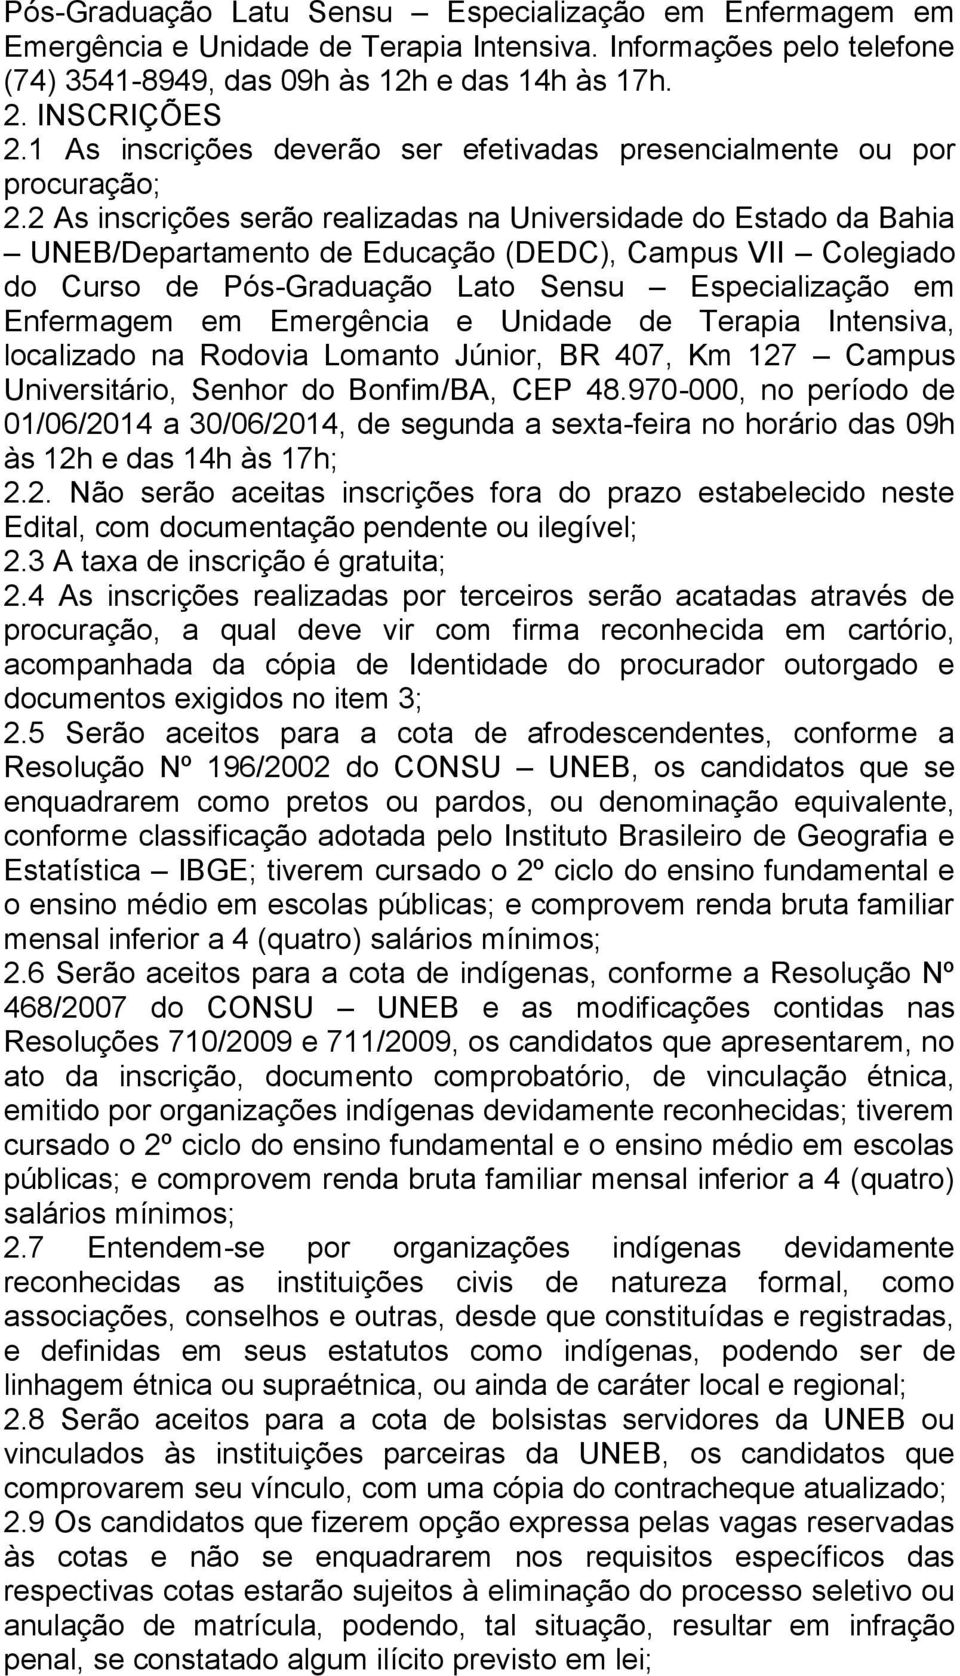 2 As inscrições serão realizadas na Universidade do Estado da Bahia UNEB/Departamento de Educação (DEDC), Campus VII Colegiado do Curso de Pós-Graduação Lato Sensu Especialização em Enfermagem em